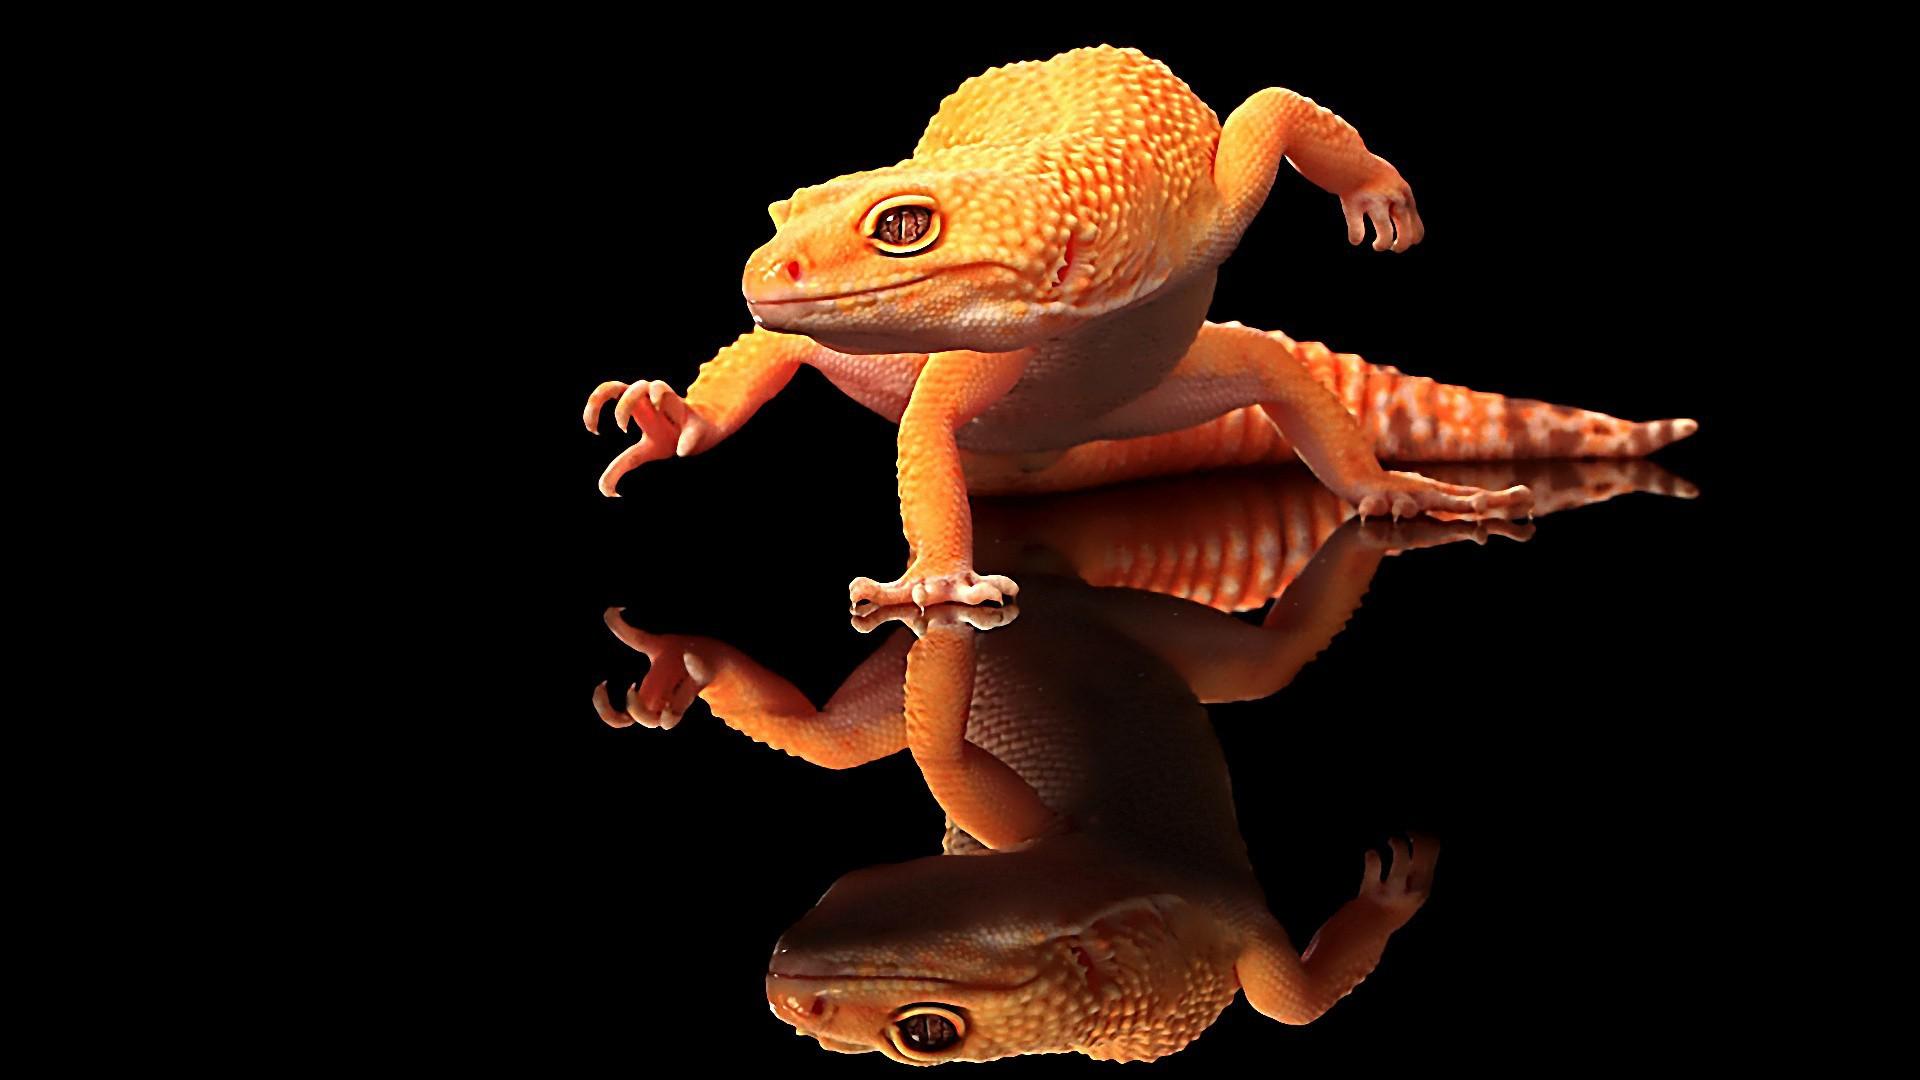 Cool Lizard Wallpaper - HD Wallpaper 